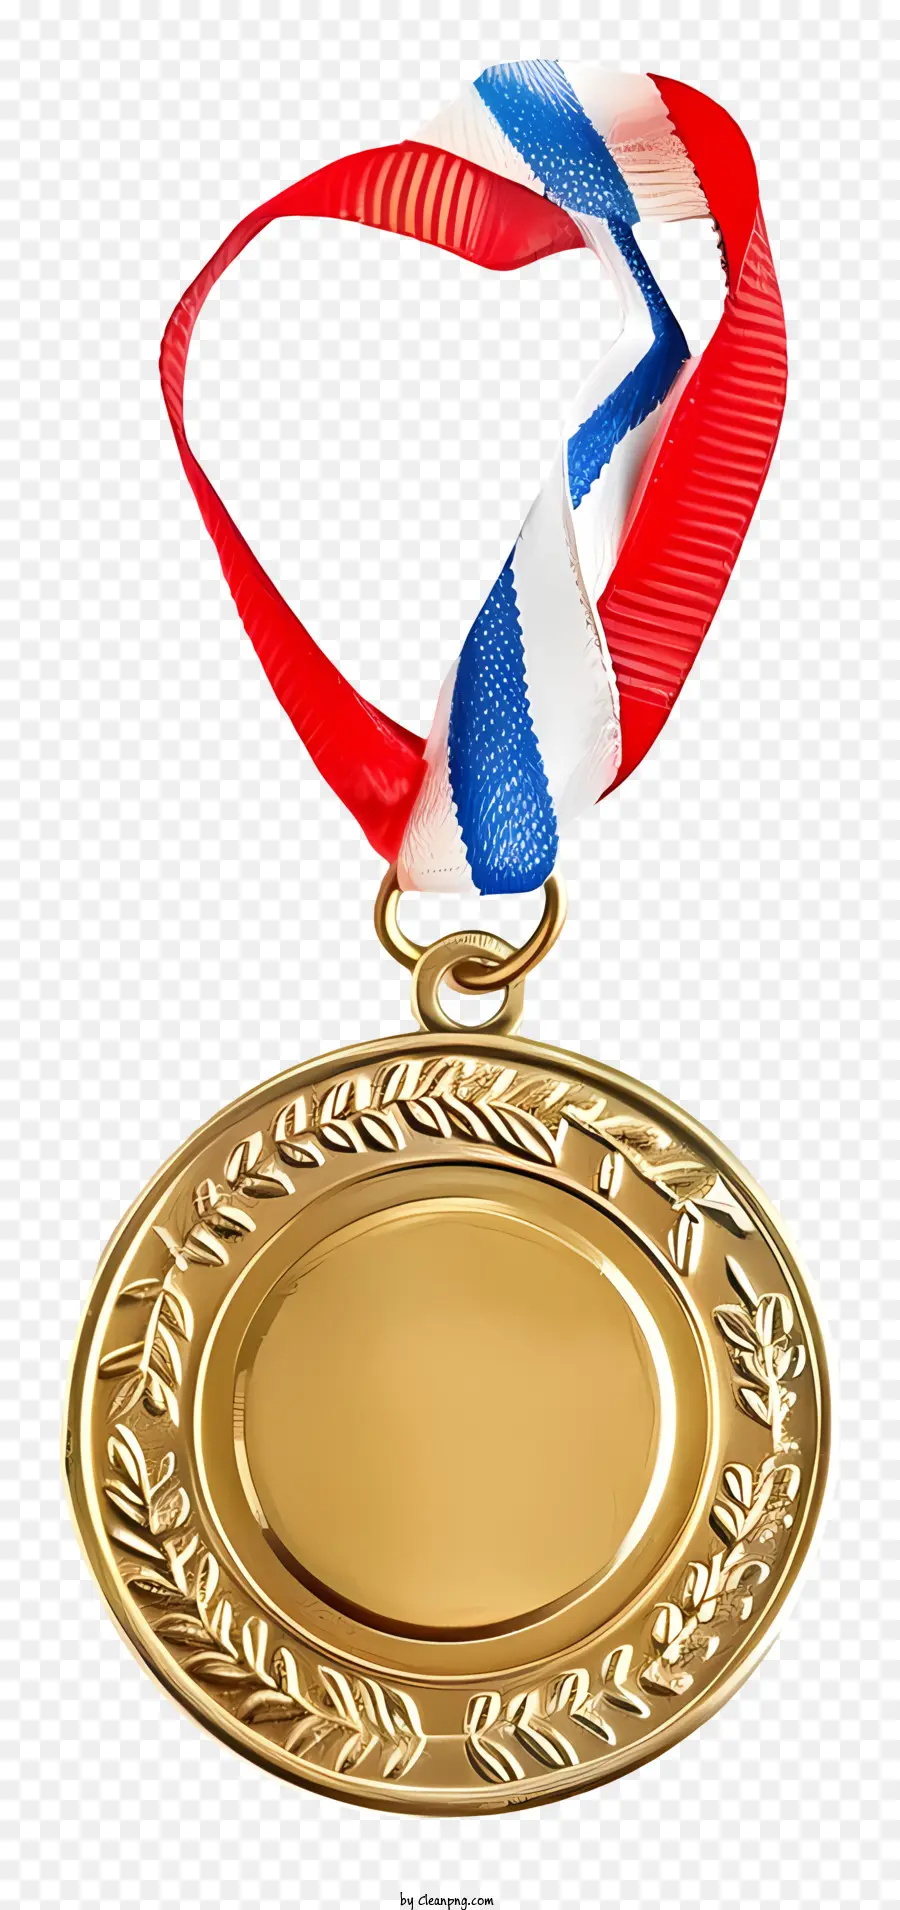 huy chương vàng - Huy chương quân sự vàng với dòng chữ Hoa Kỳ, 2013